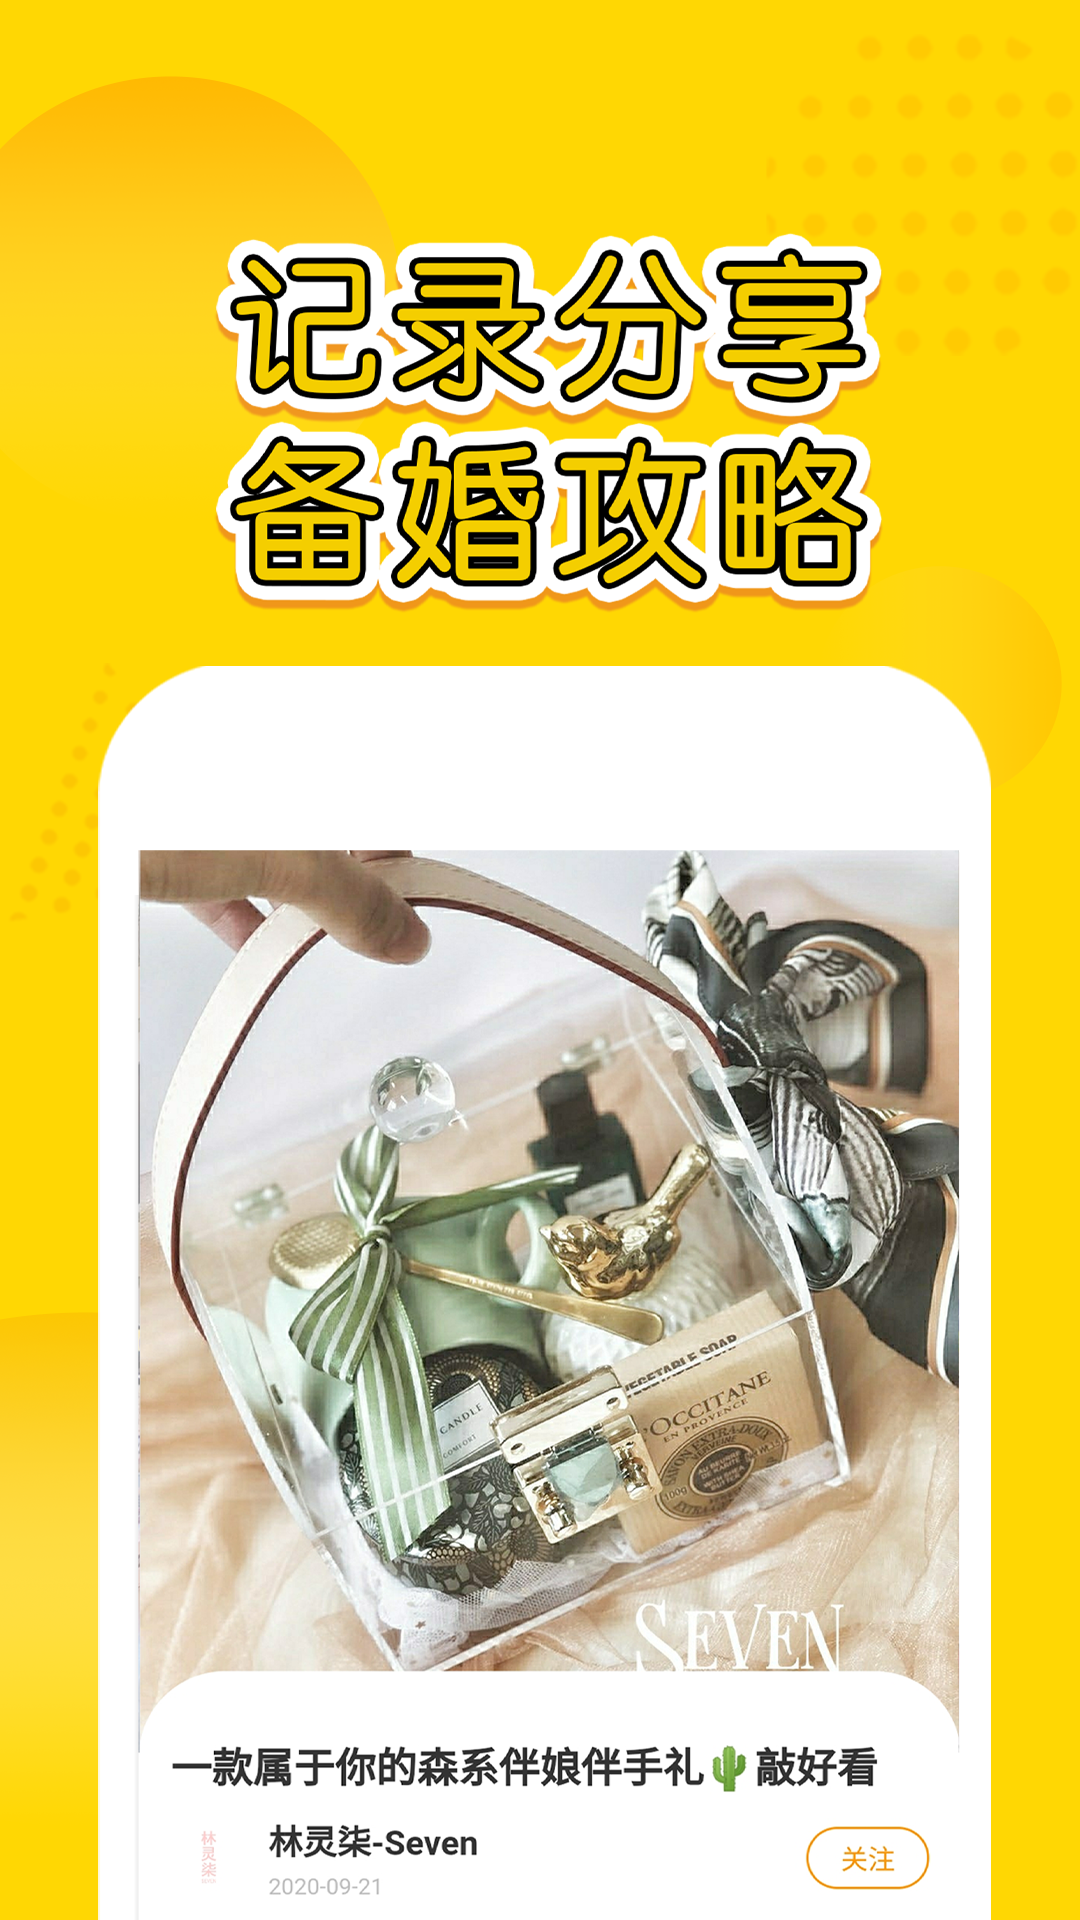 星阑婚礼平台app1.5.62